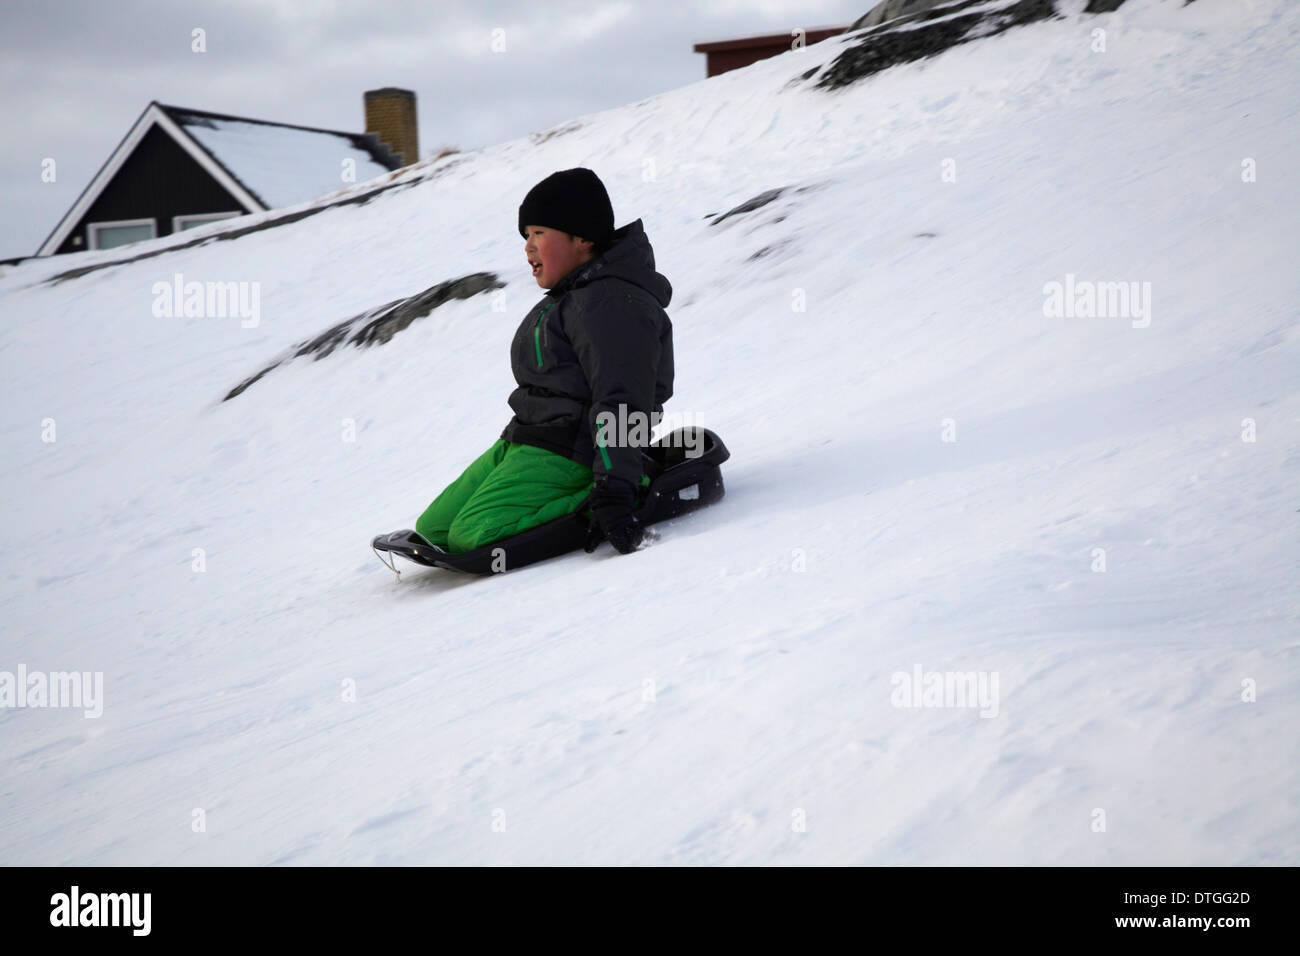 Les enfants jouant sur la glace. Nuuk Groenland Banque D'Images